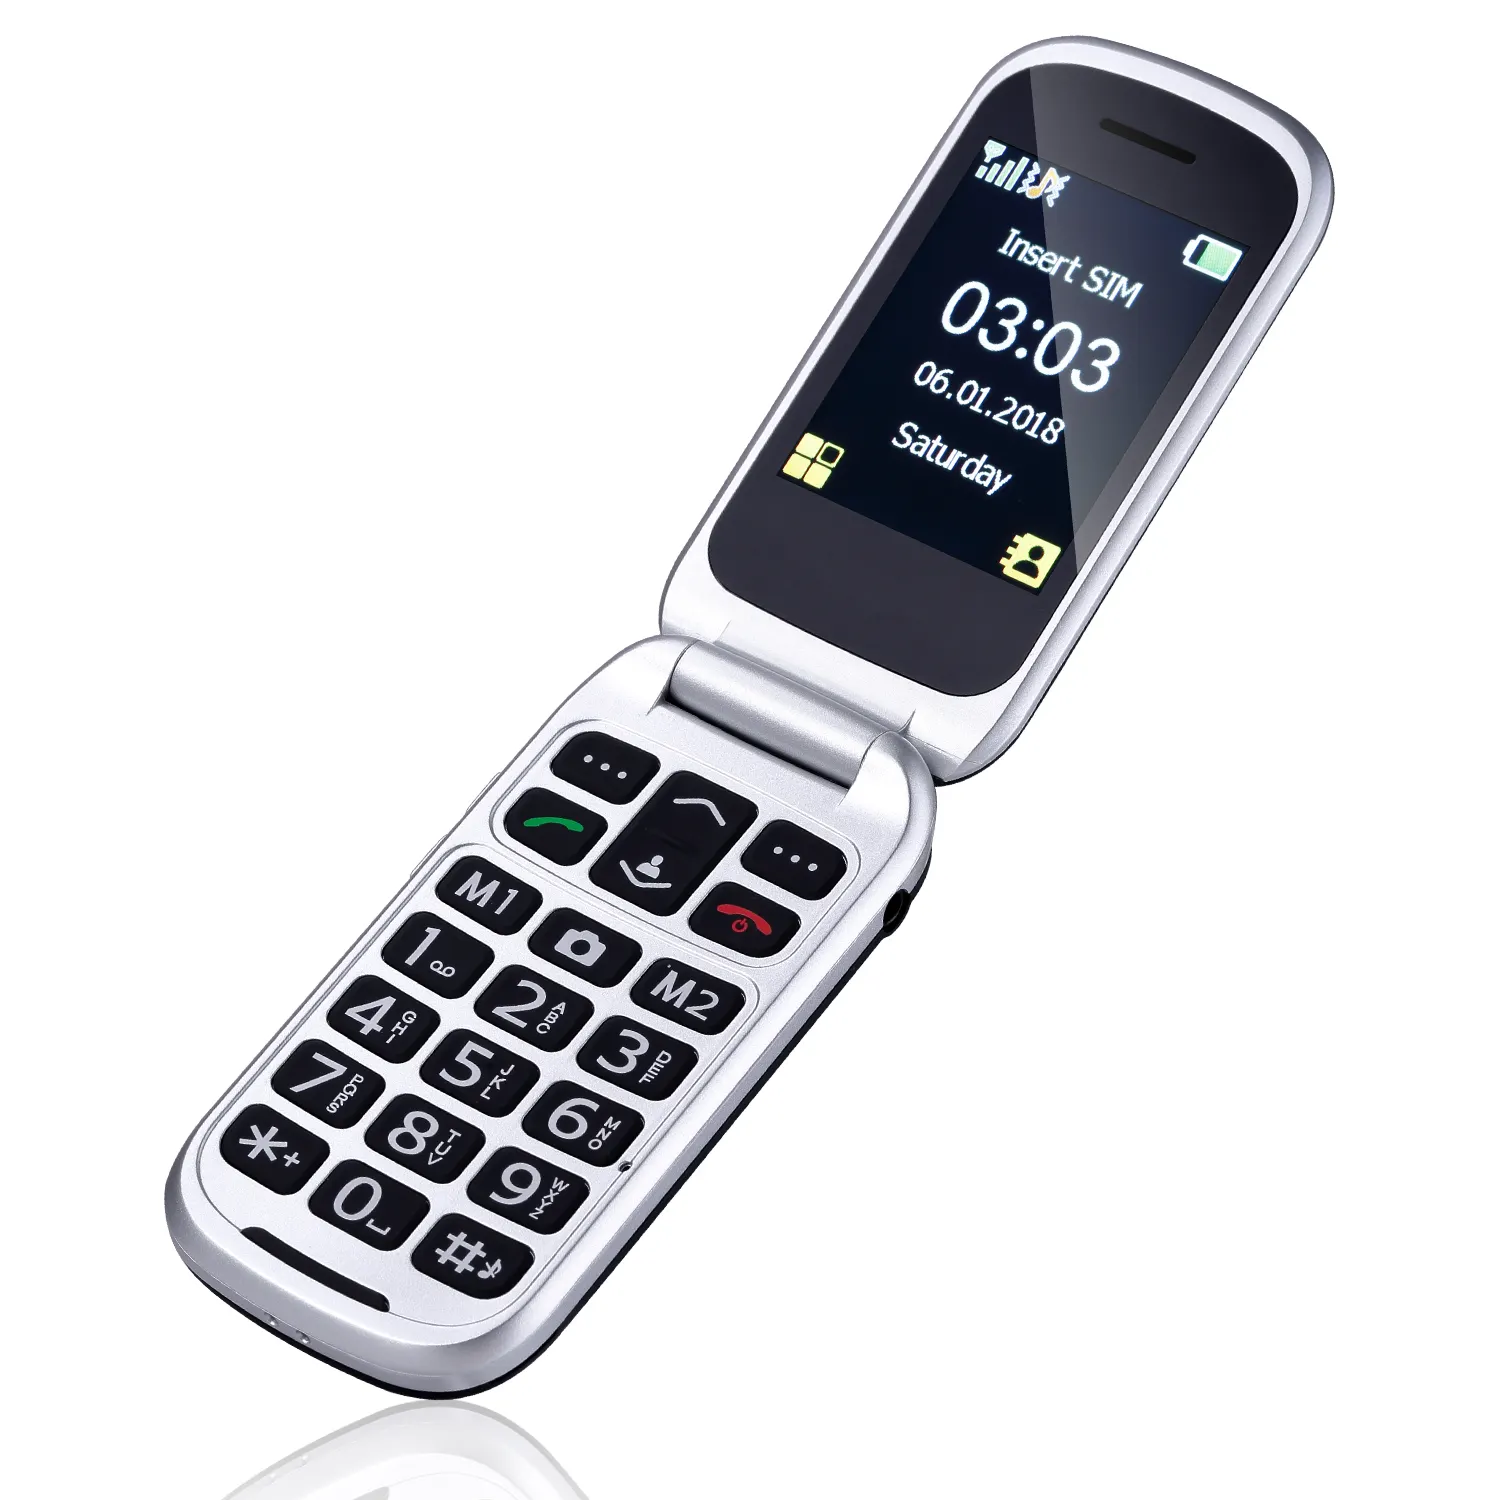 Supporto per telefono senior D330 a doppio schermo portatile 3g flip per telefono cellulare